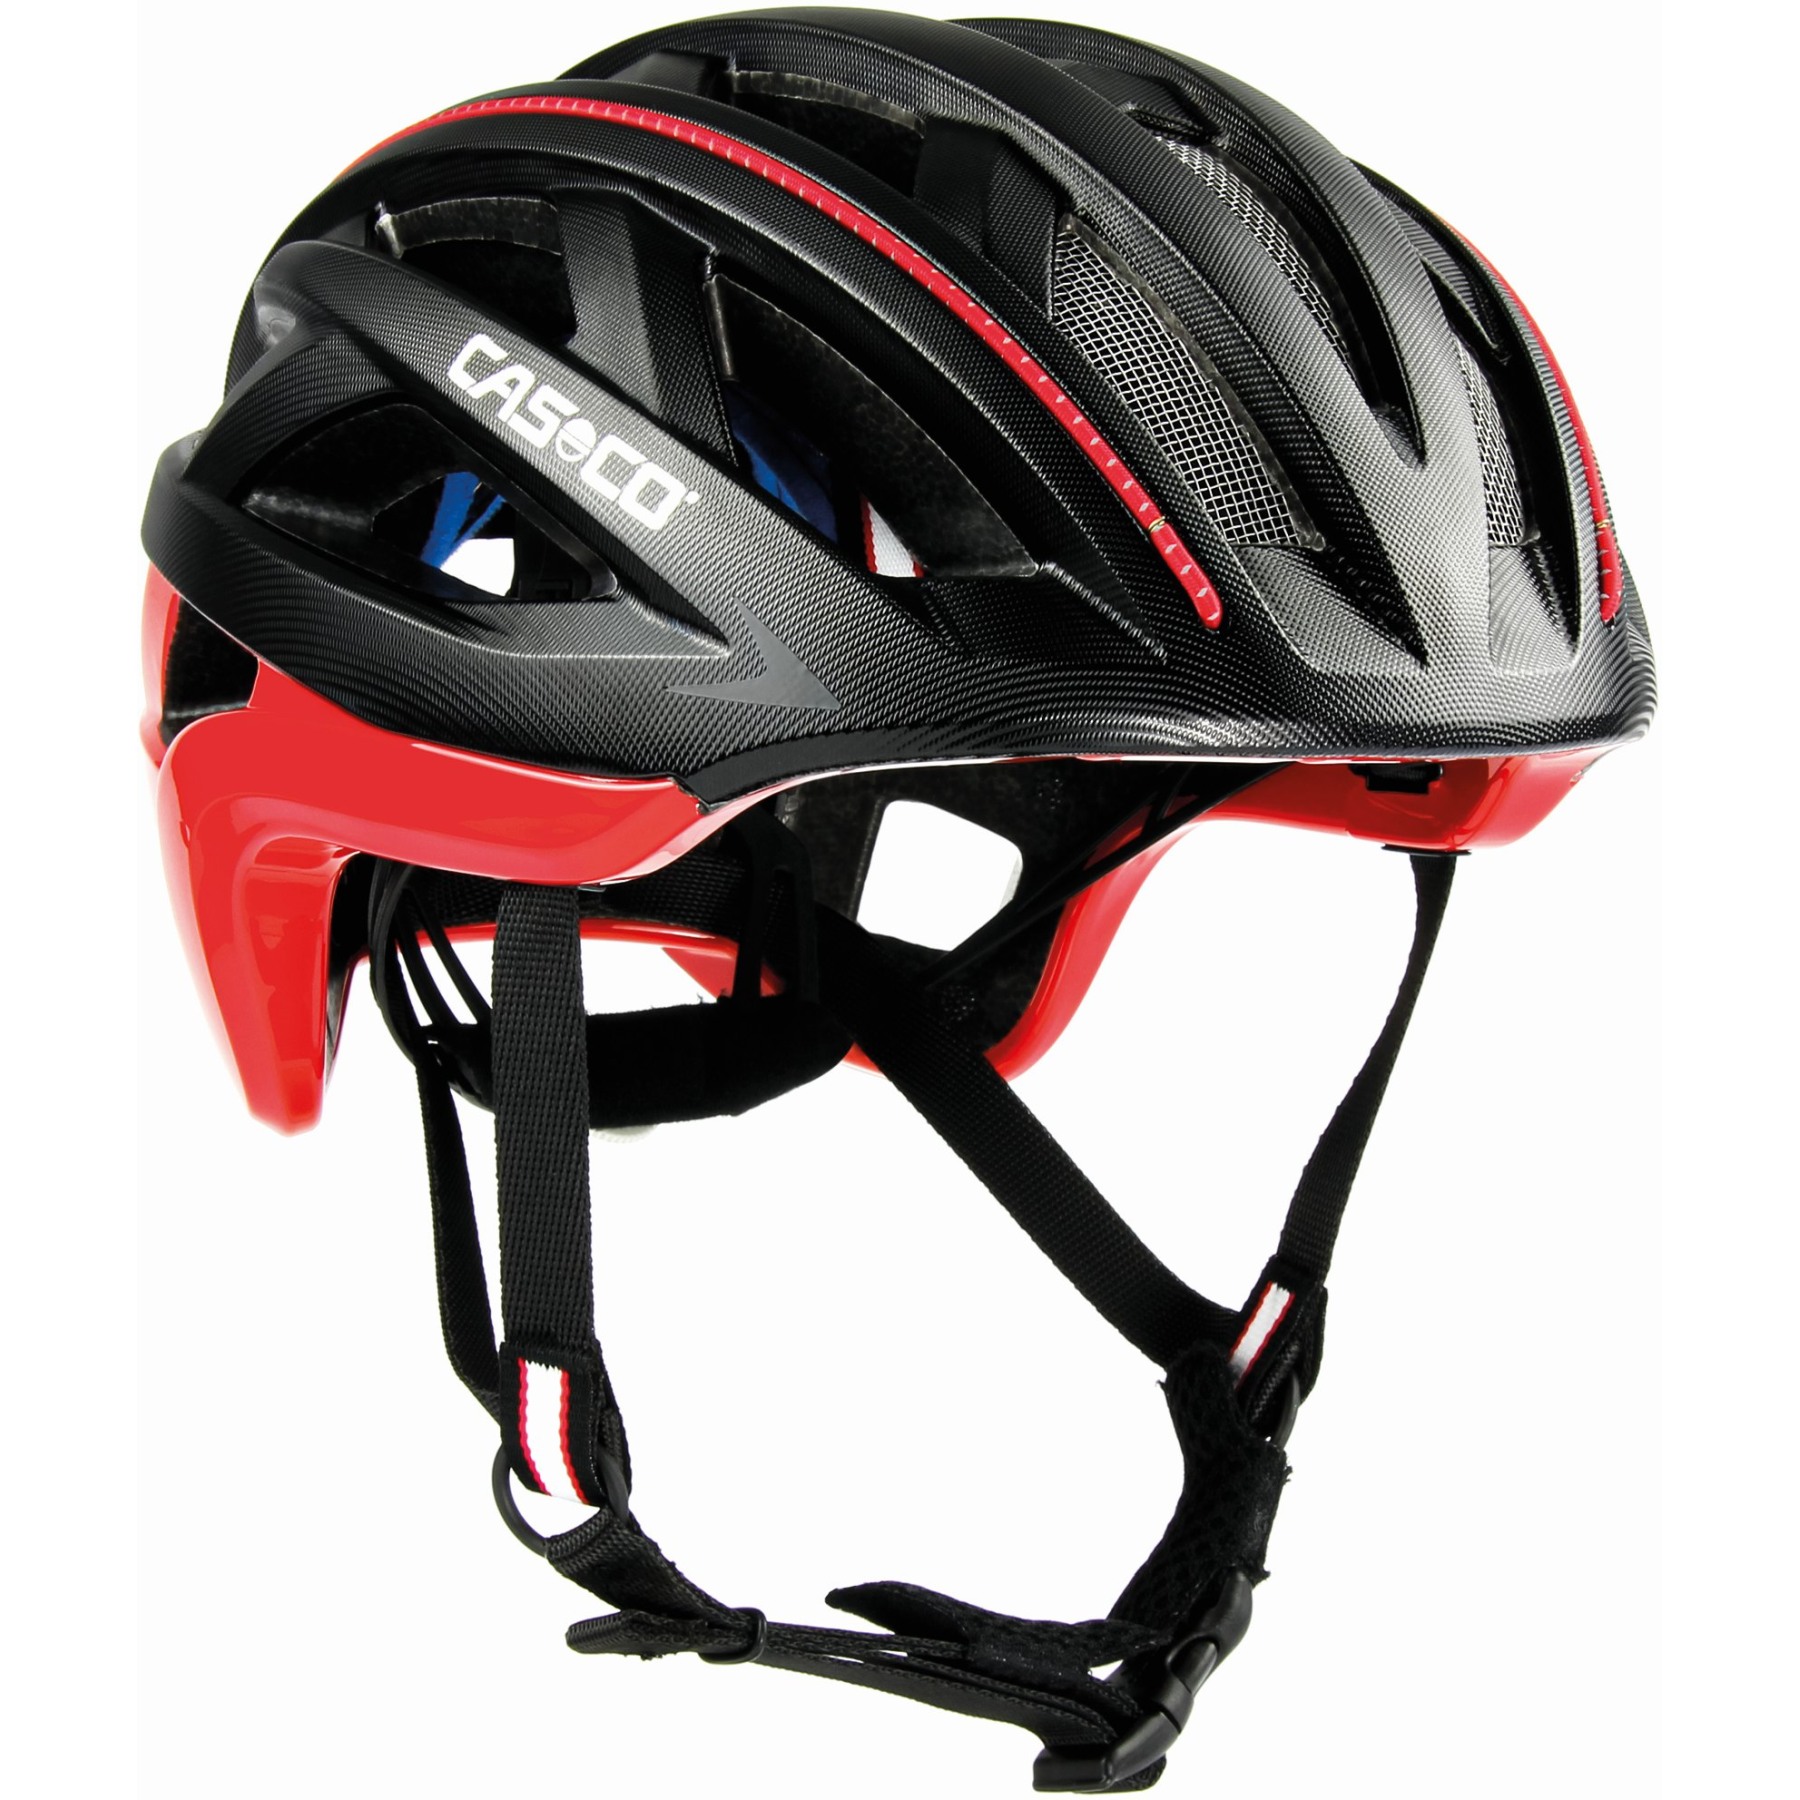 Produktbild von Casco Cuda 2 Strada Sport Helm - schwarz-rot Struktur